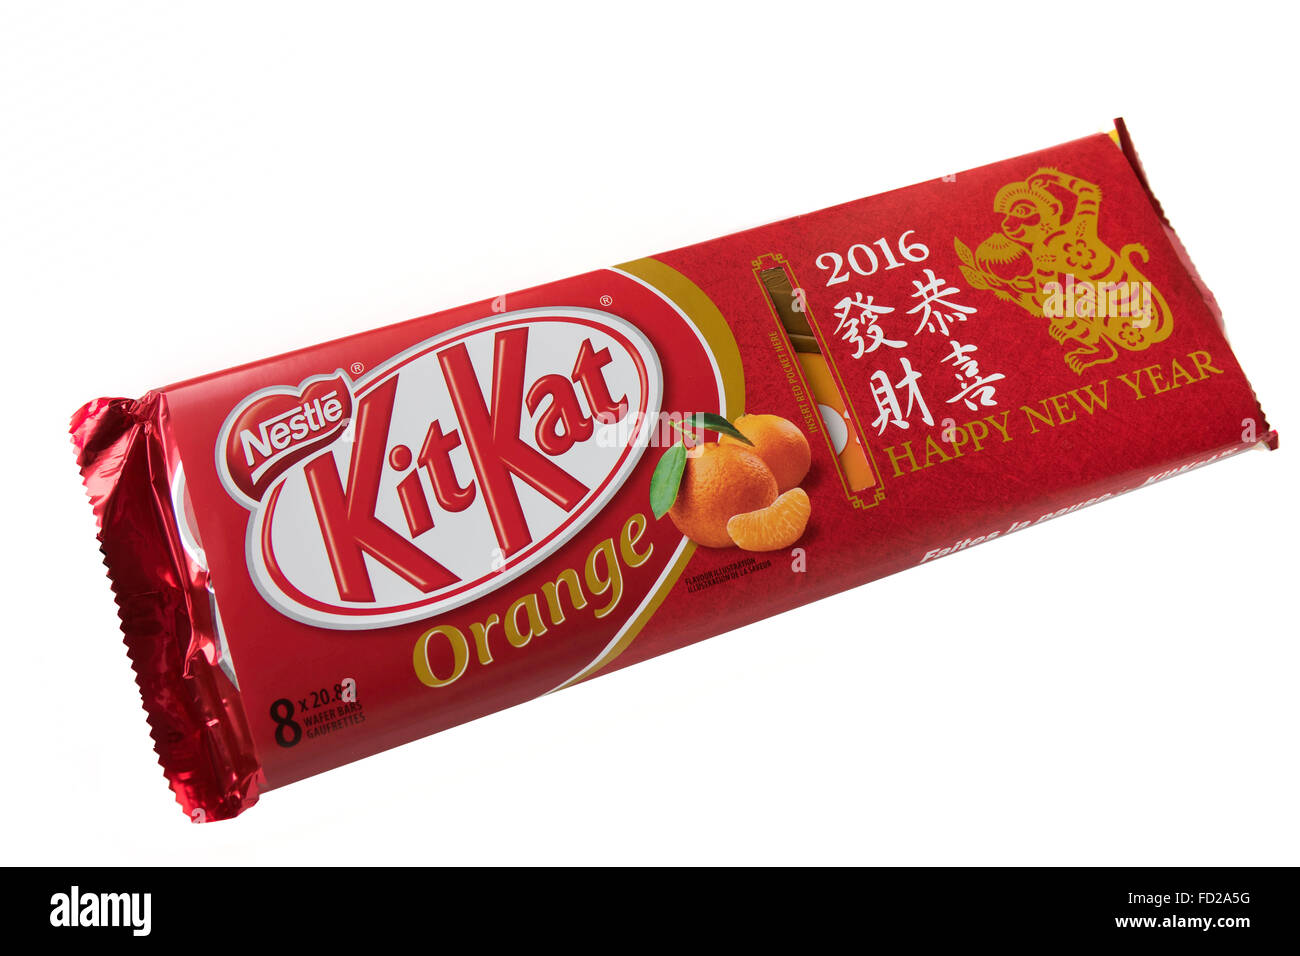 Limited Edition Orange Kit Kat Chocolate Bar Celebrating The Chinese New Year Of 2016 Celebrating The Year Of The Monkey, Stock Photo